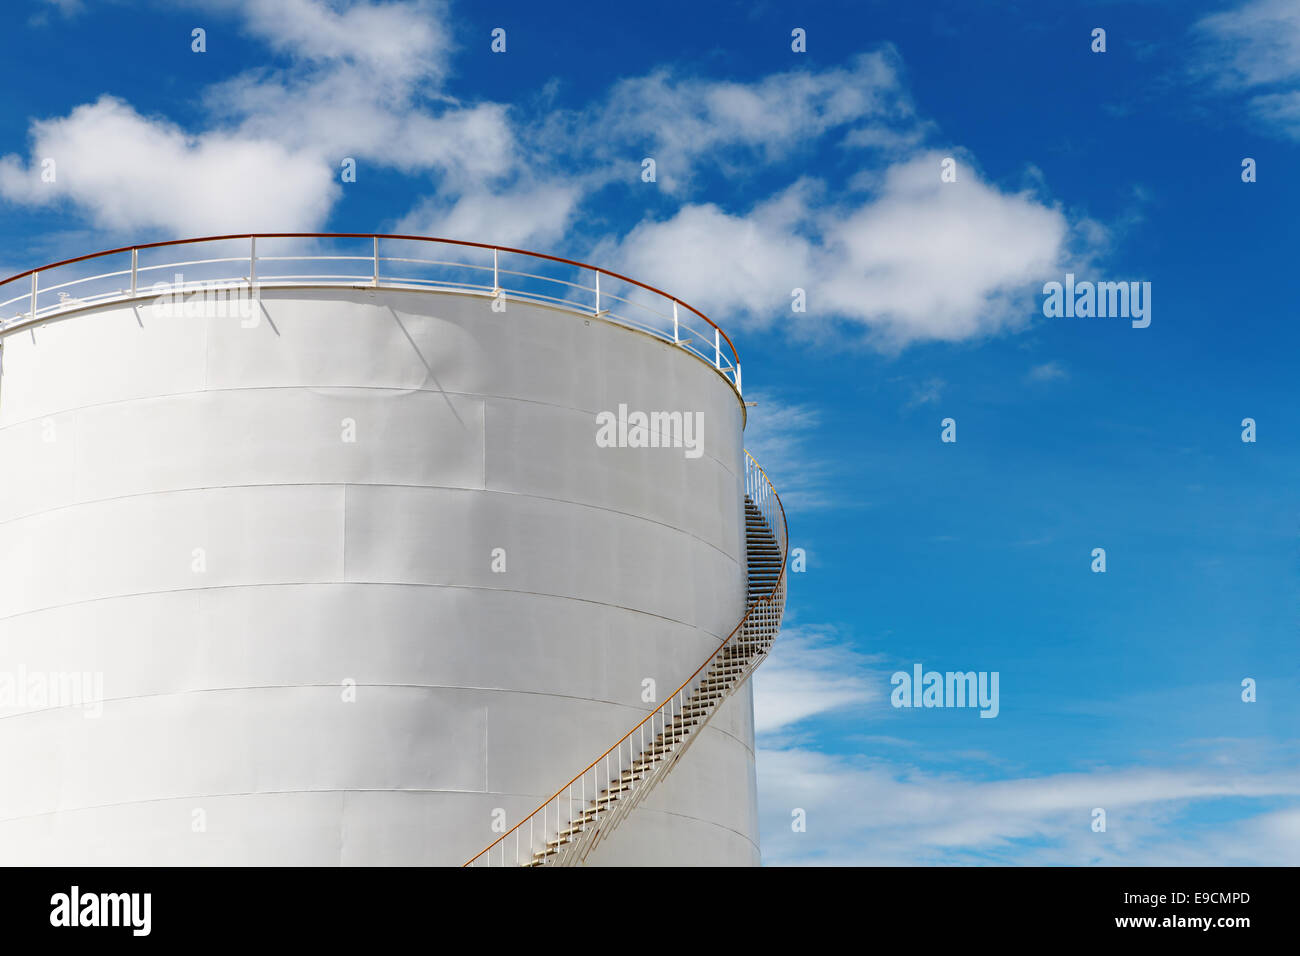 Depósito de combustible industrial contra el fondo de cielo azul Foto de stock